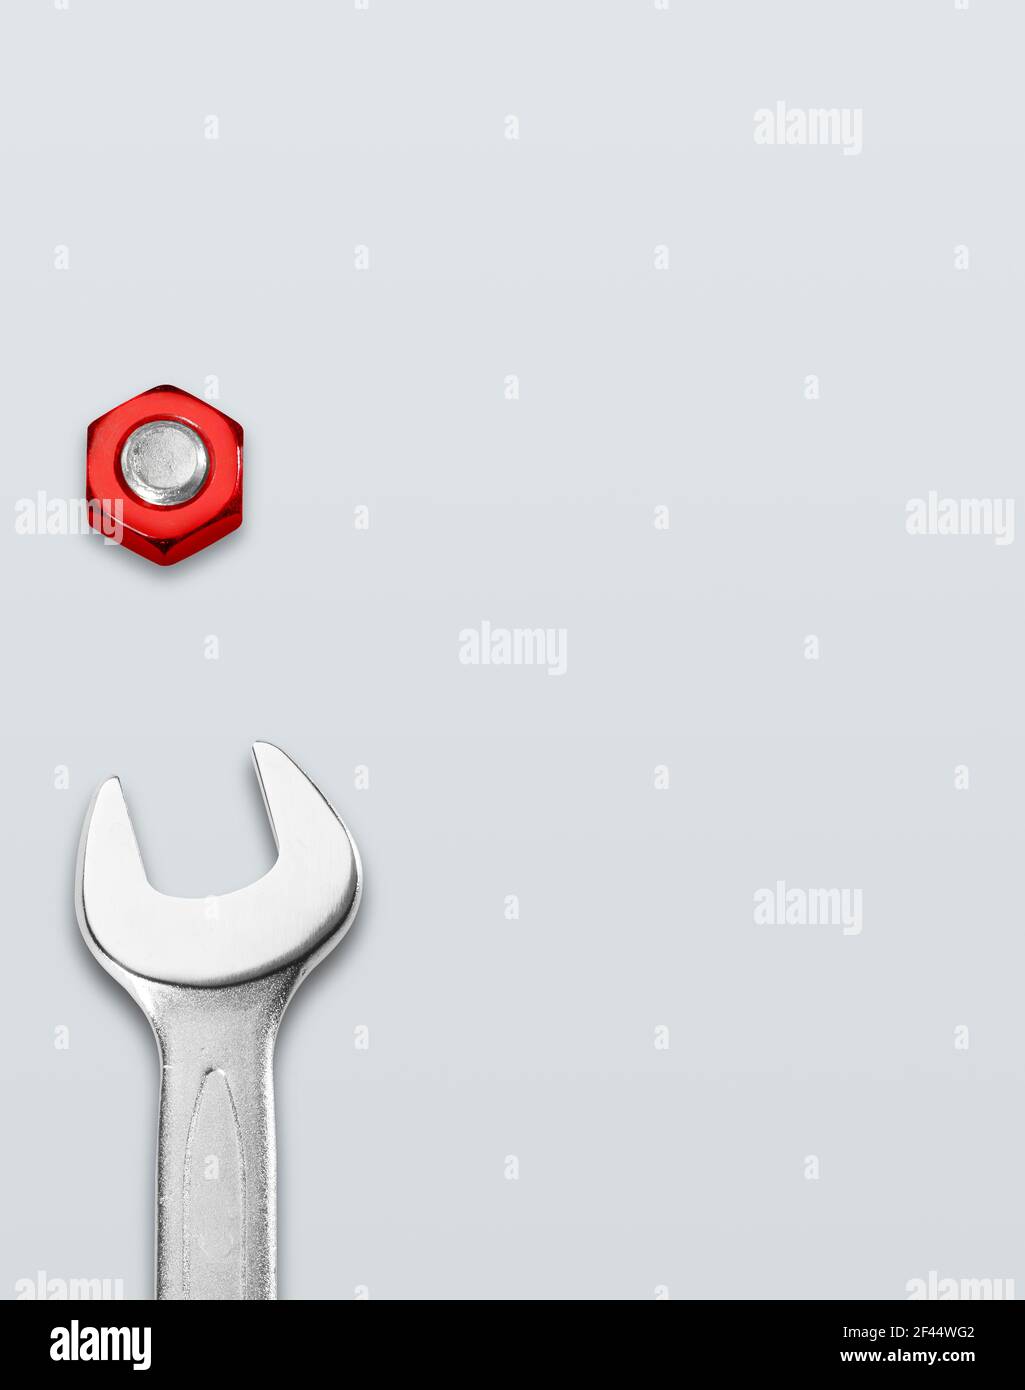 Gabelschlüssel und rote Schraube auf weißem Hintergrund Stockfoto